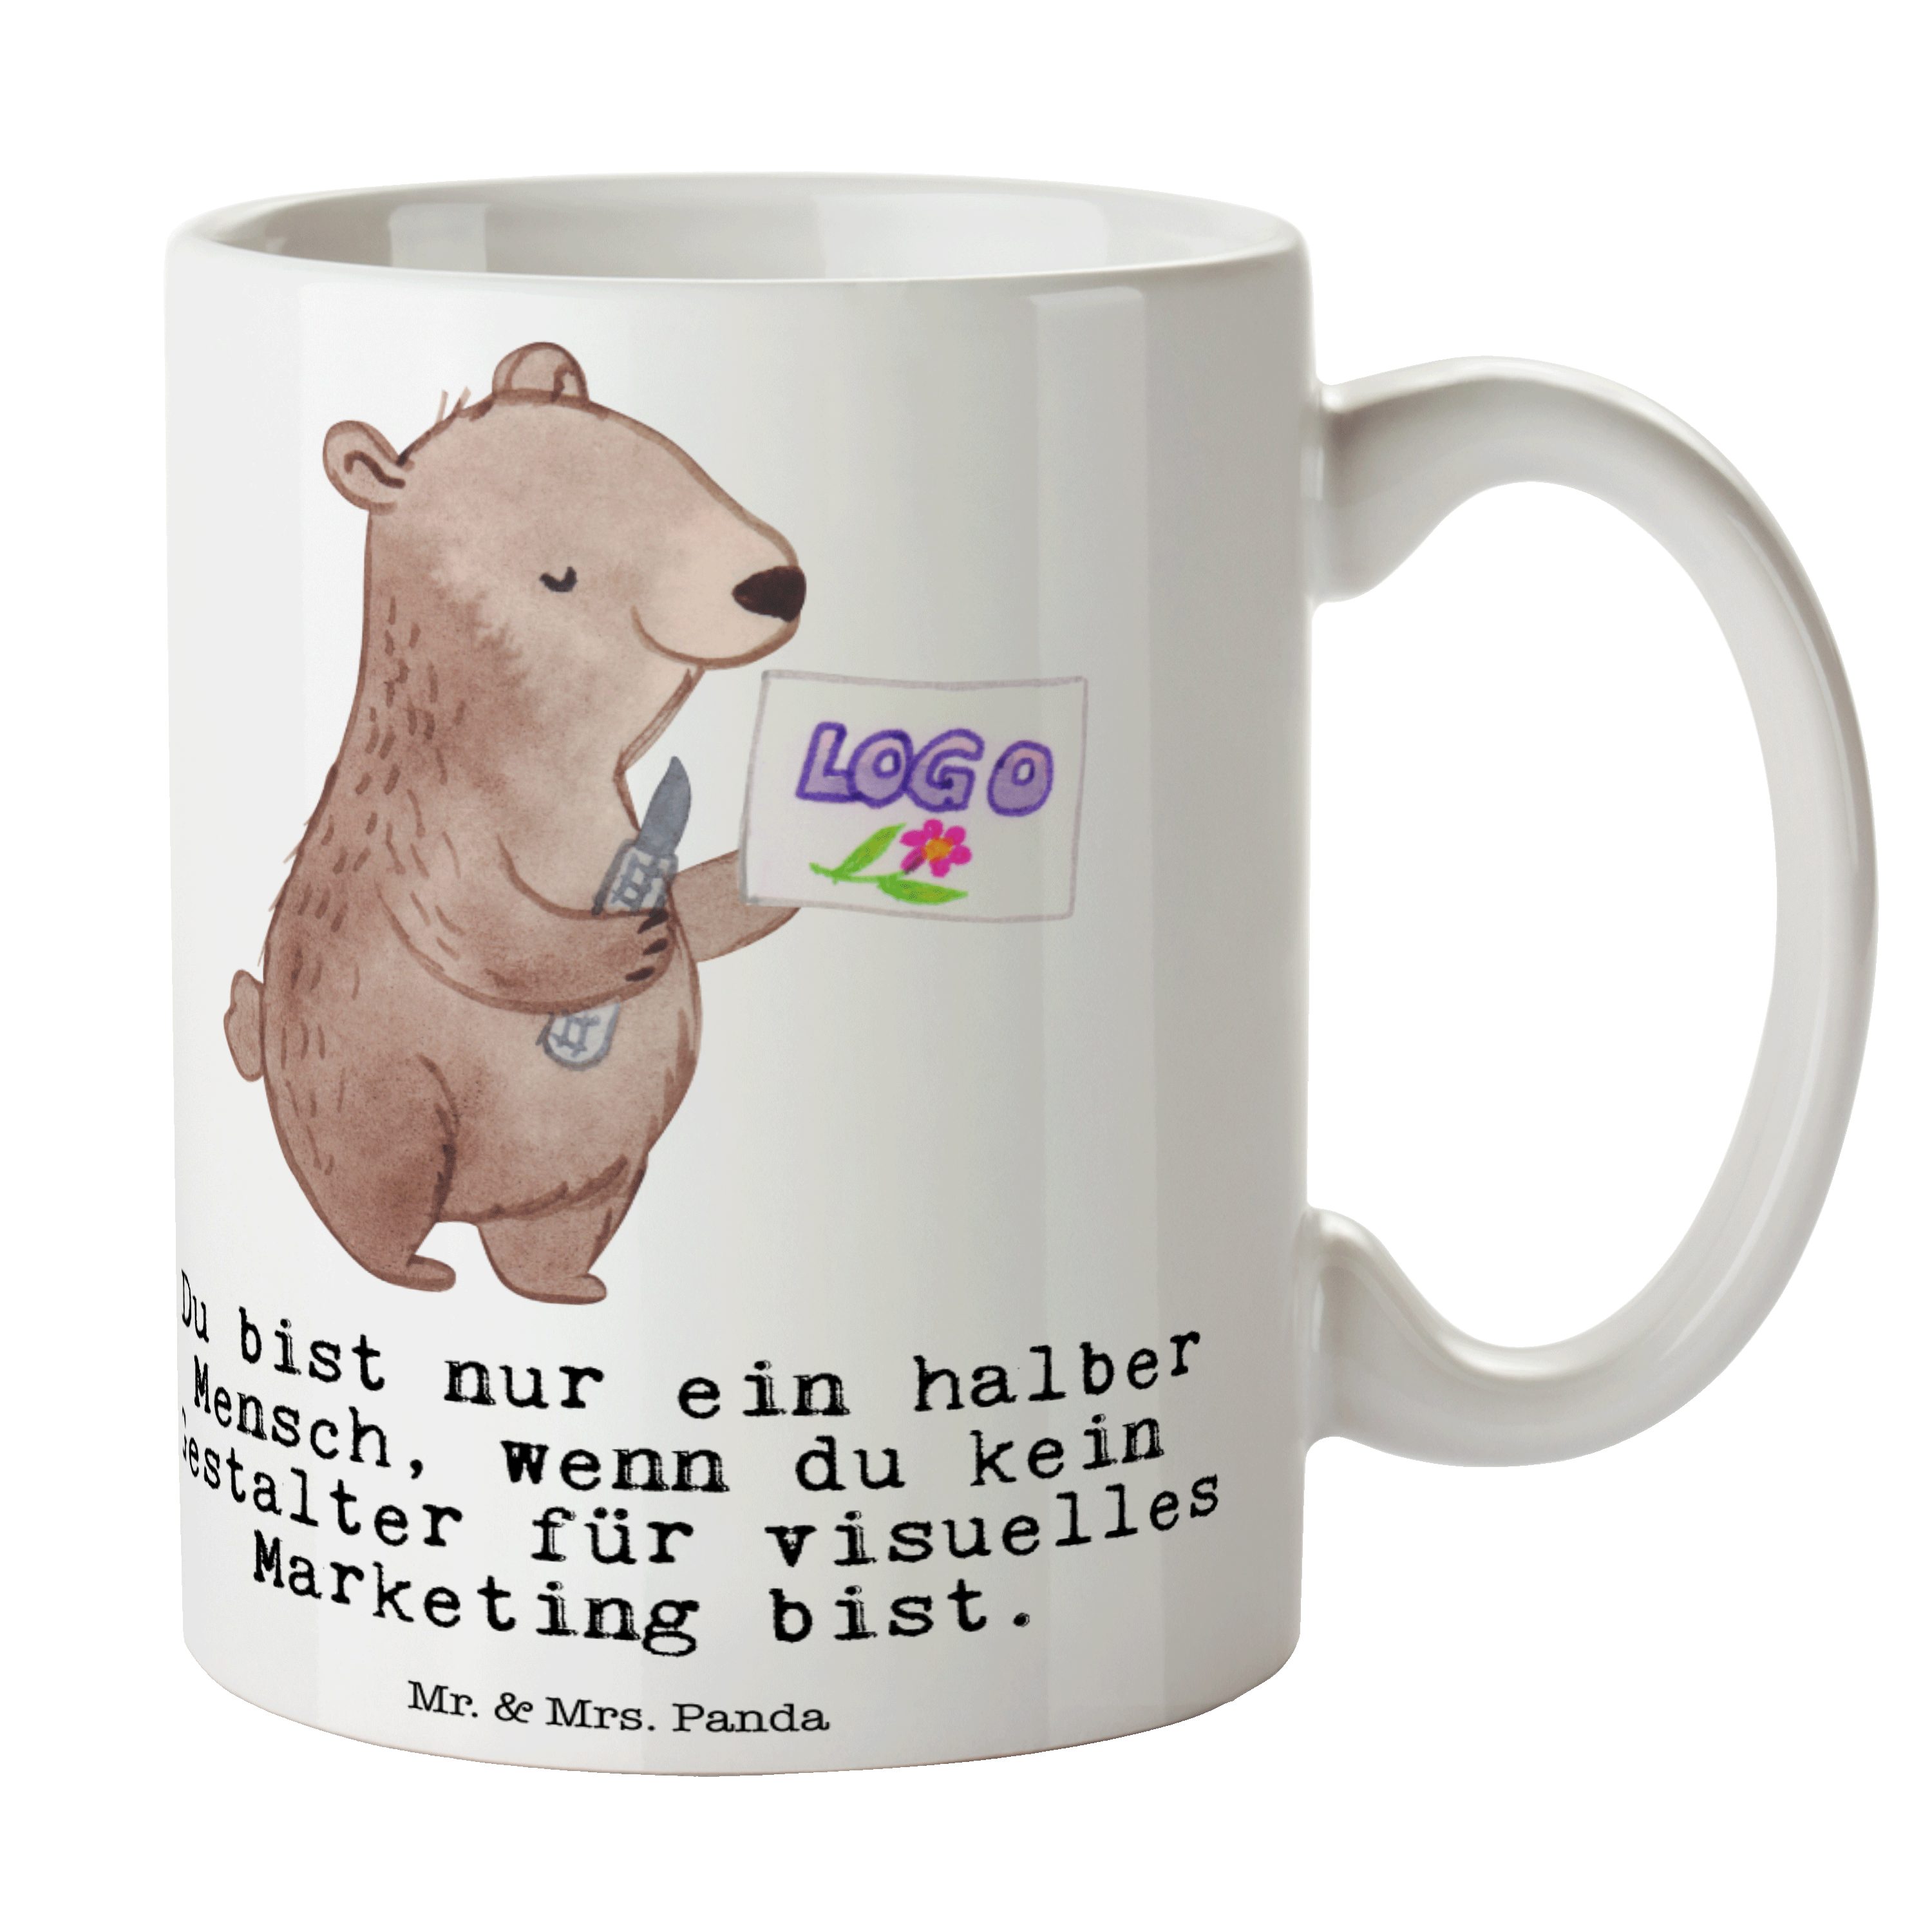 mit Herz visuelles & Teetass, Gestalter Mr. Weiß - Mrs. Panda - für Tasse Marketing Keramik Geschenk,